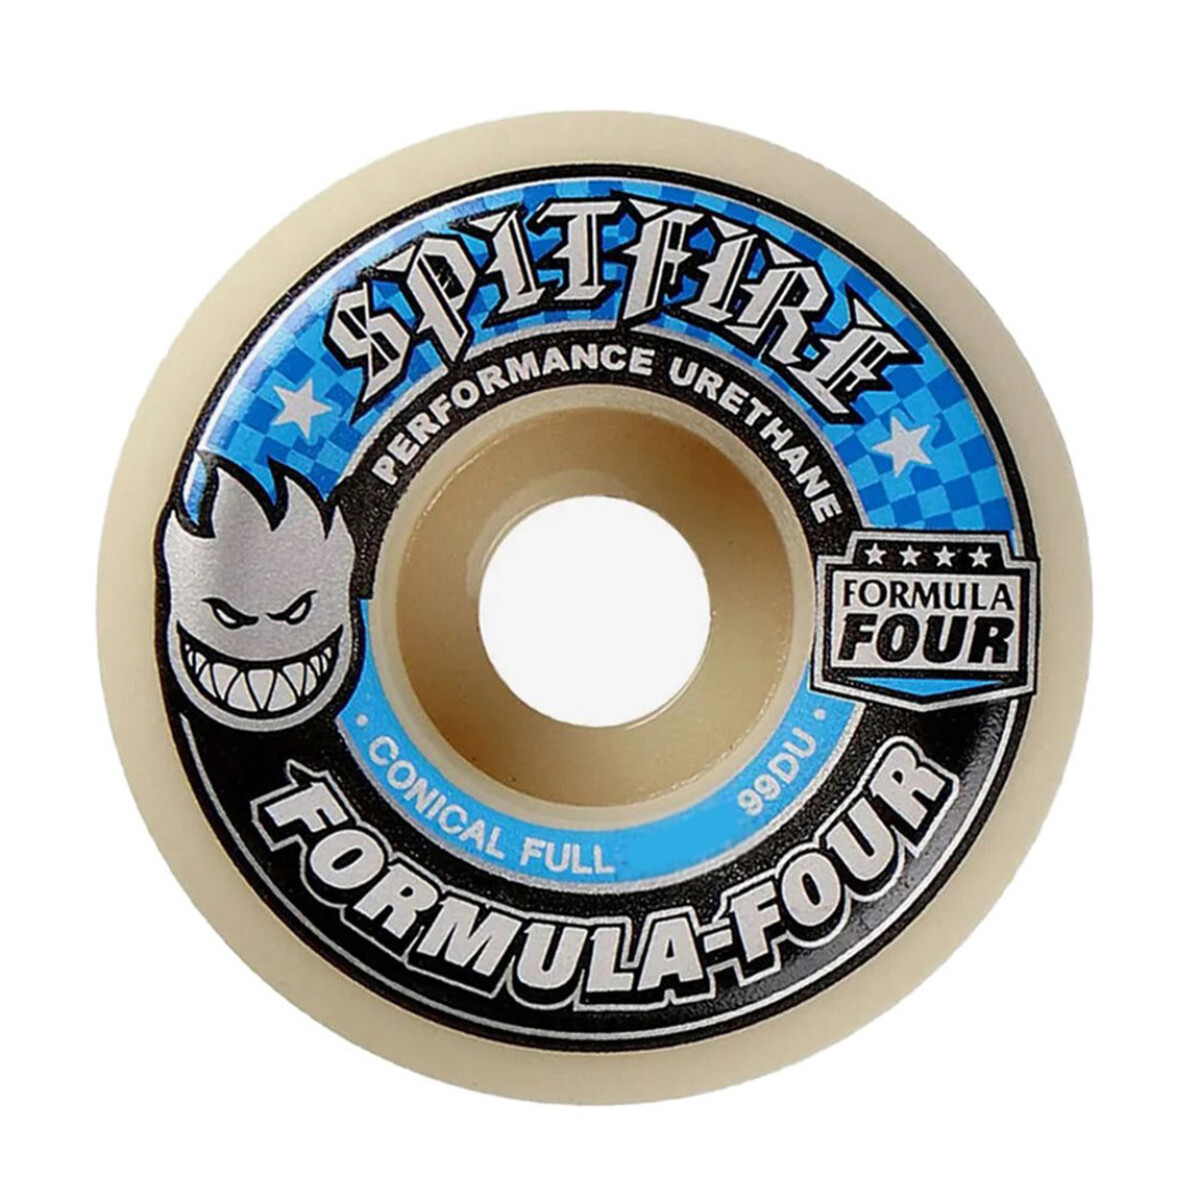 Ruedas de Skate Spitfire Formula Four Conical Full (Blue) 53mm 99A 